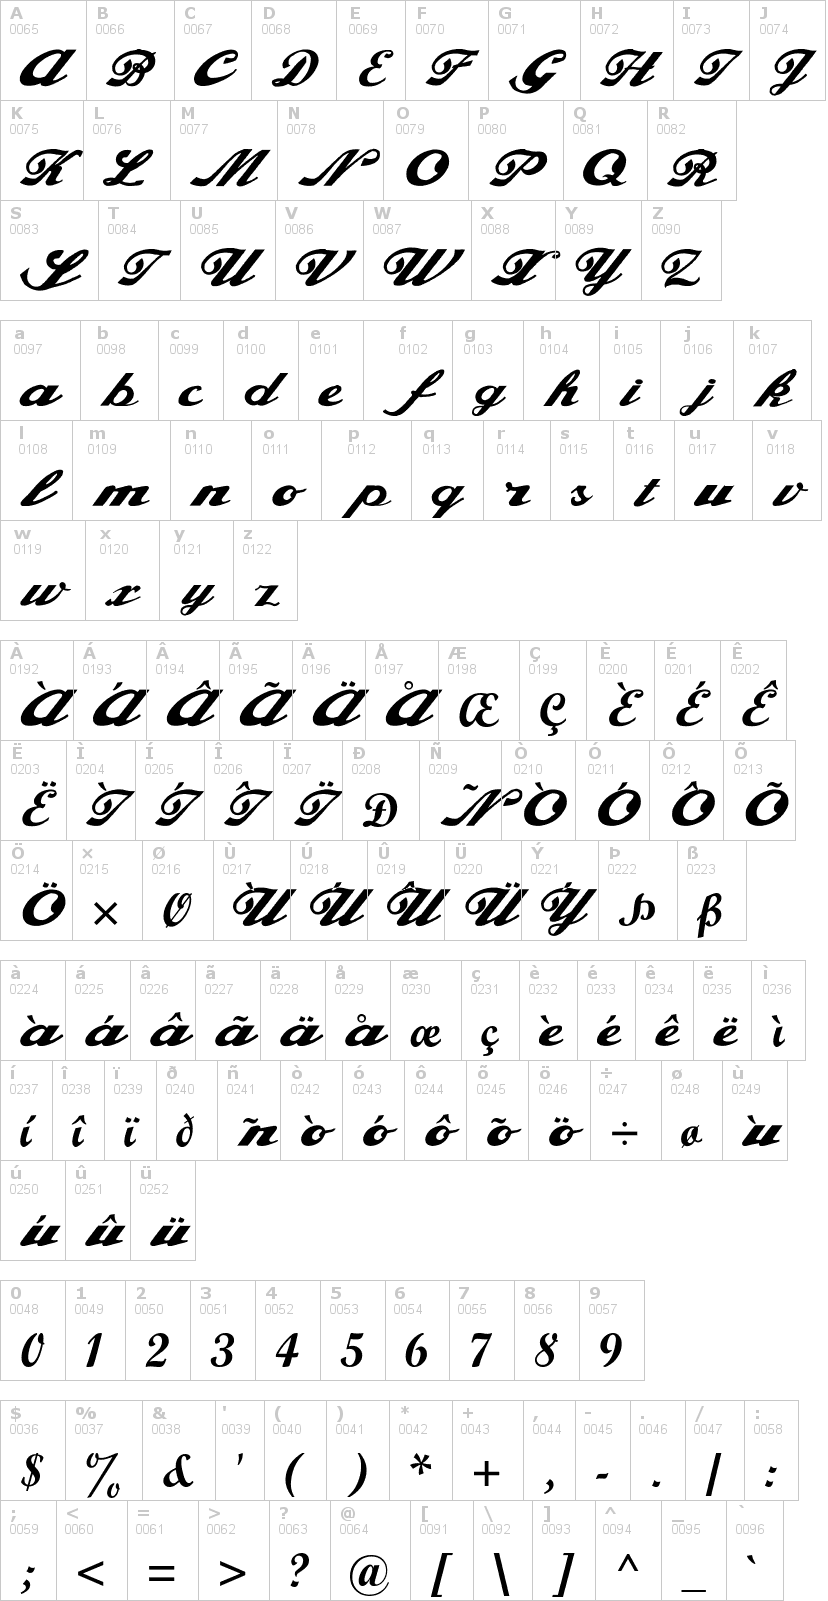 Lettere dell'alfabeto del font alfaowner-script con le quali è possibile realizzare adesivi prespaziati